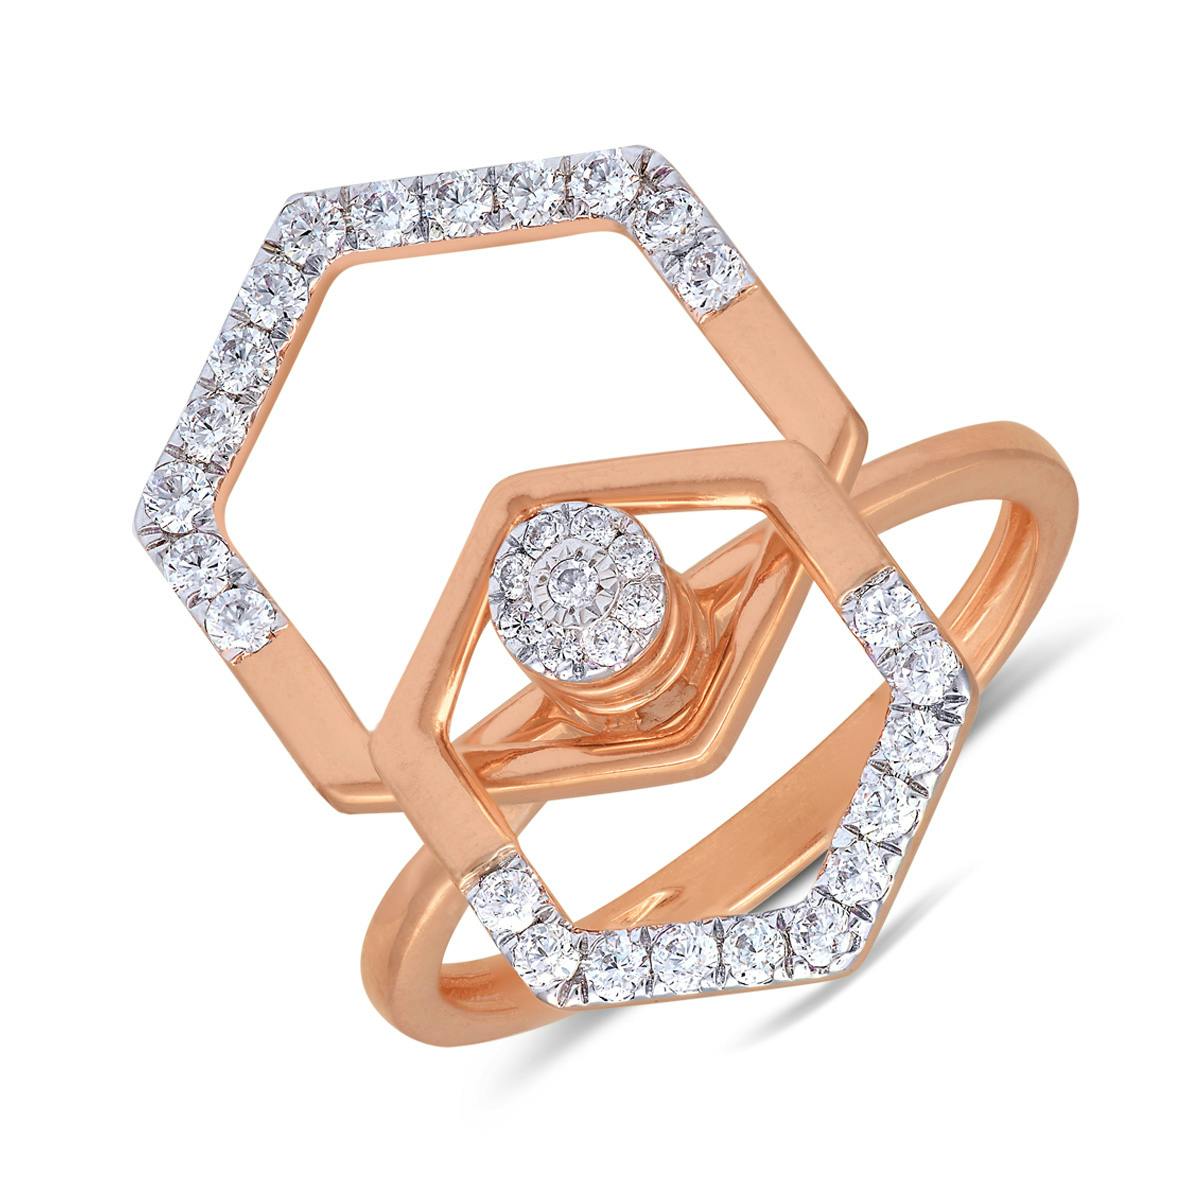 Alex diamond ring